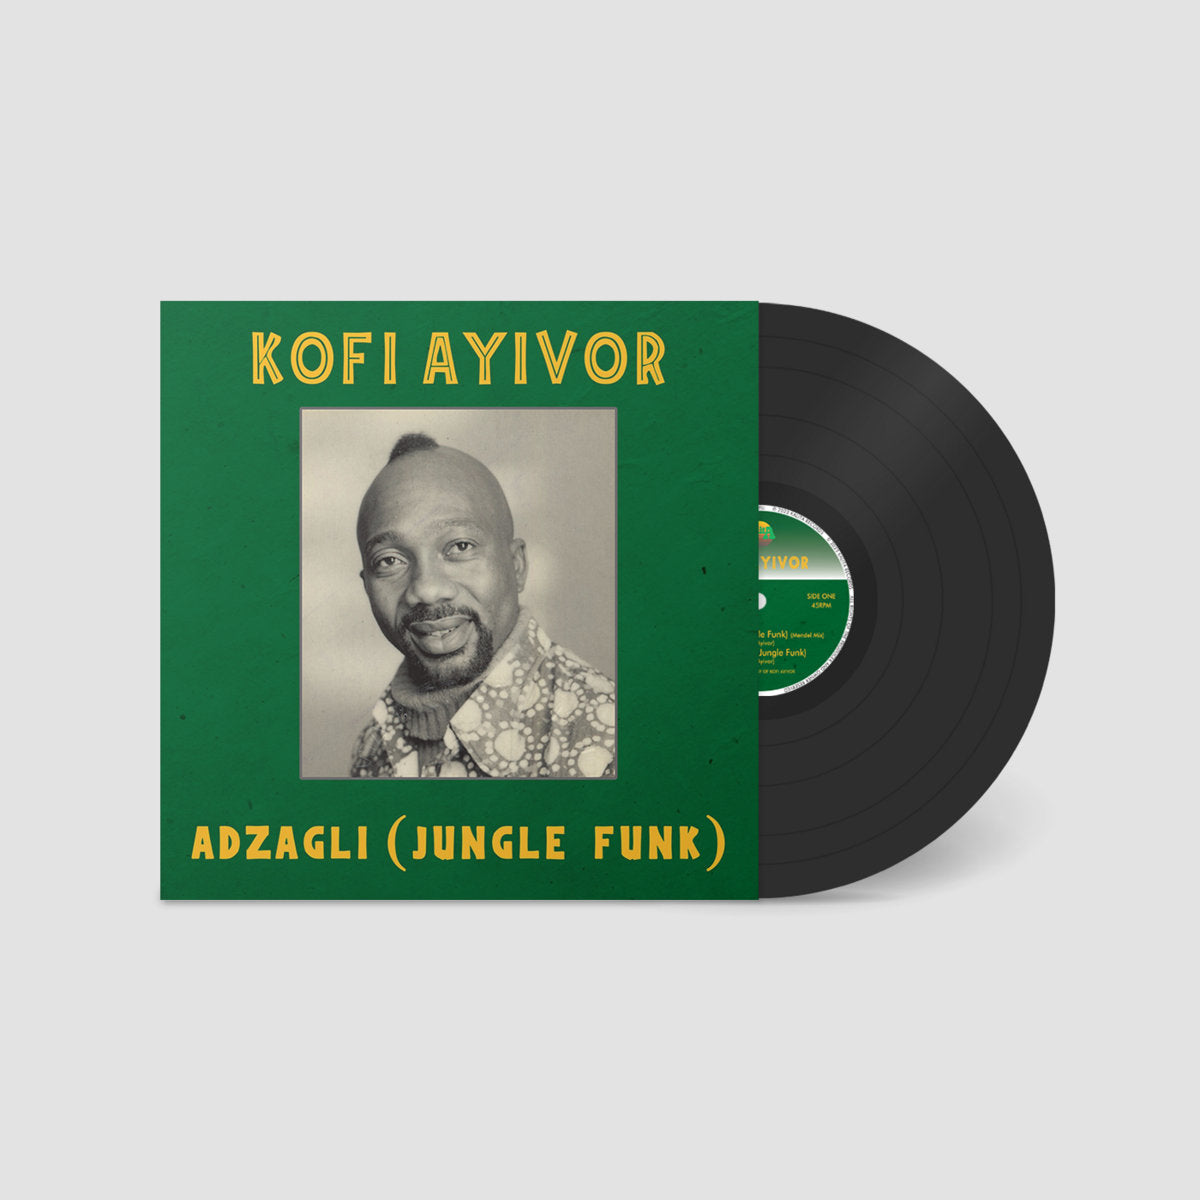 Kofi Ayivor – Adzagli (Jungle Funk) LP